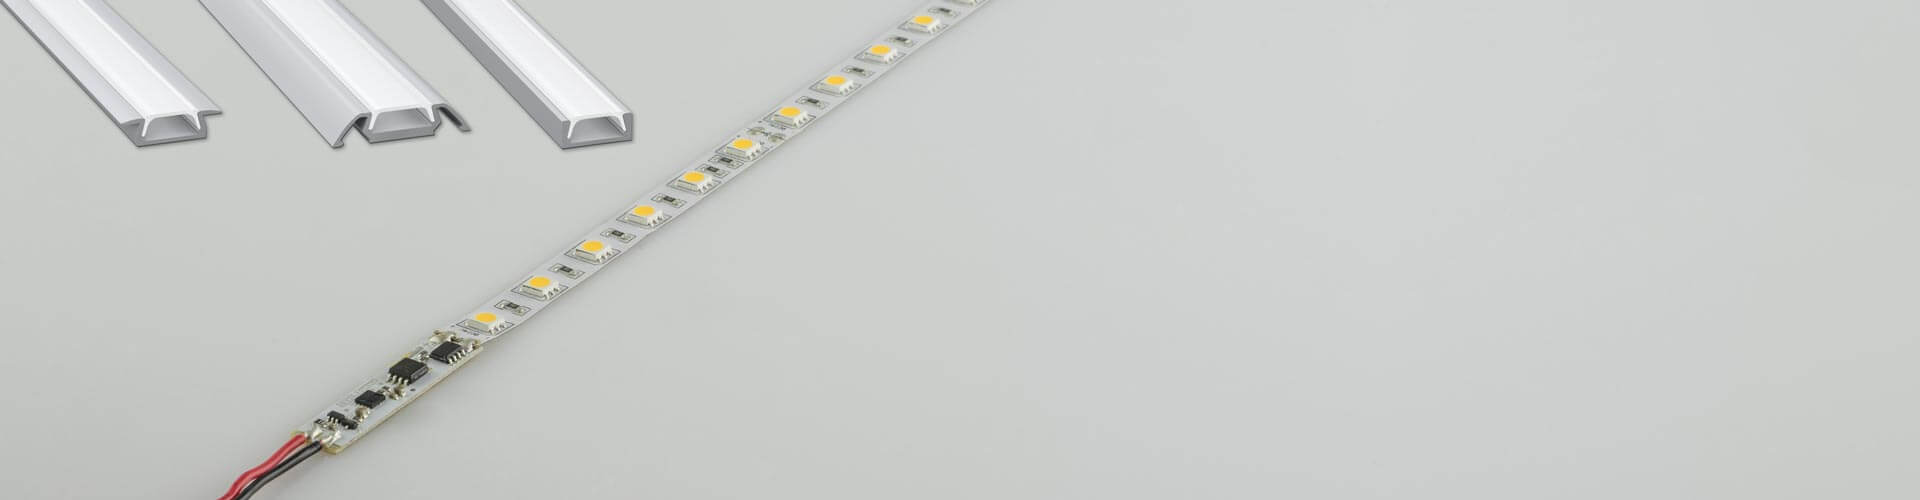 LED Streifen mit Schalter Bild 5